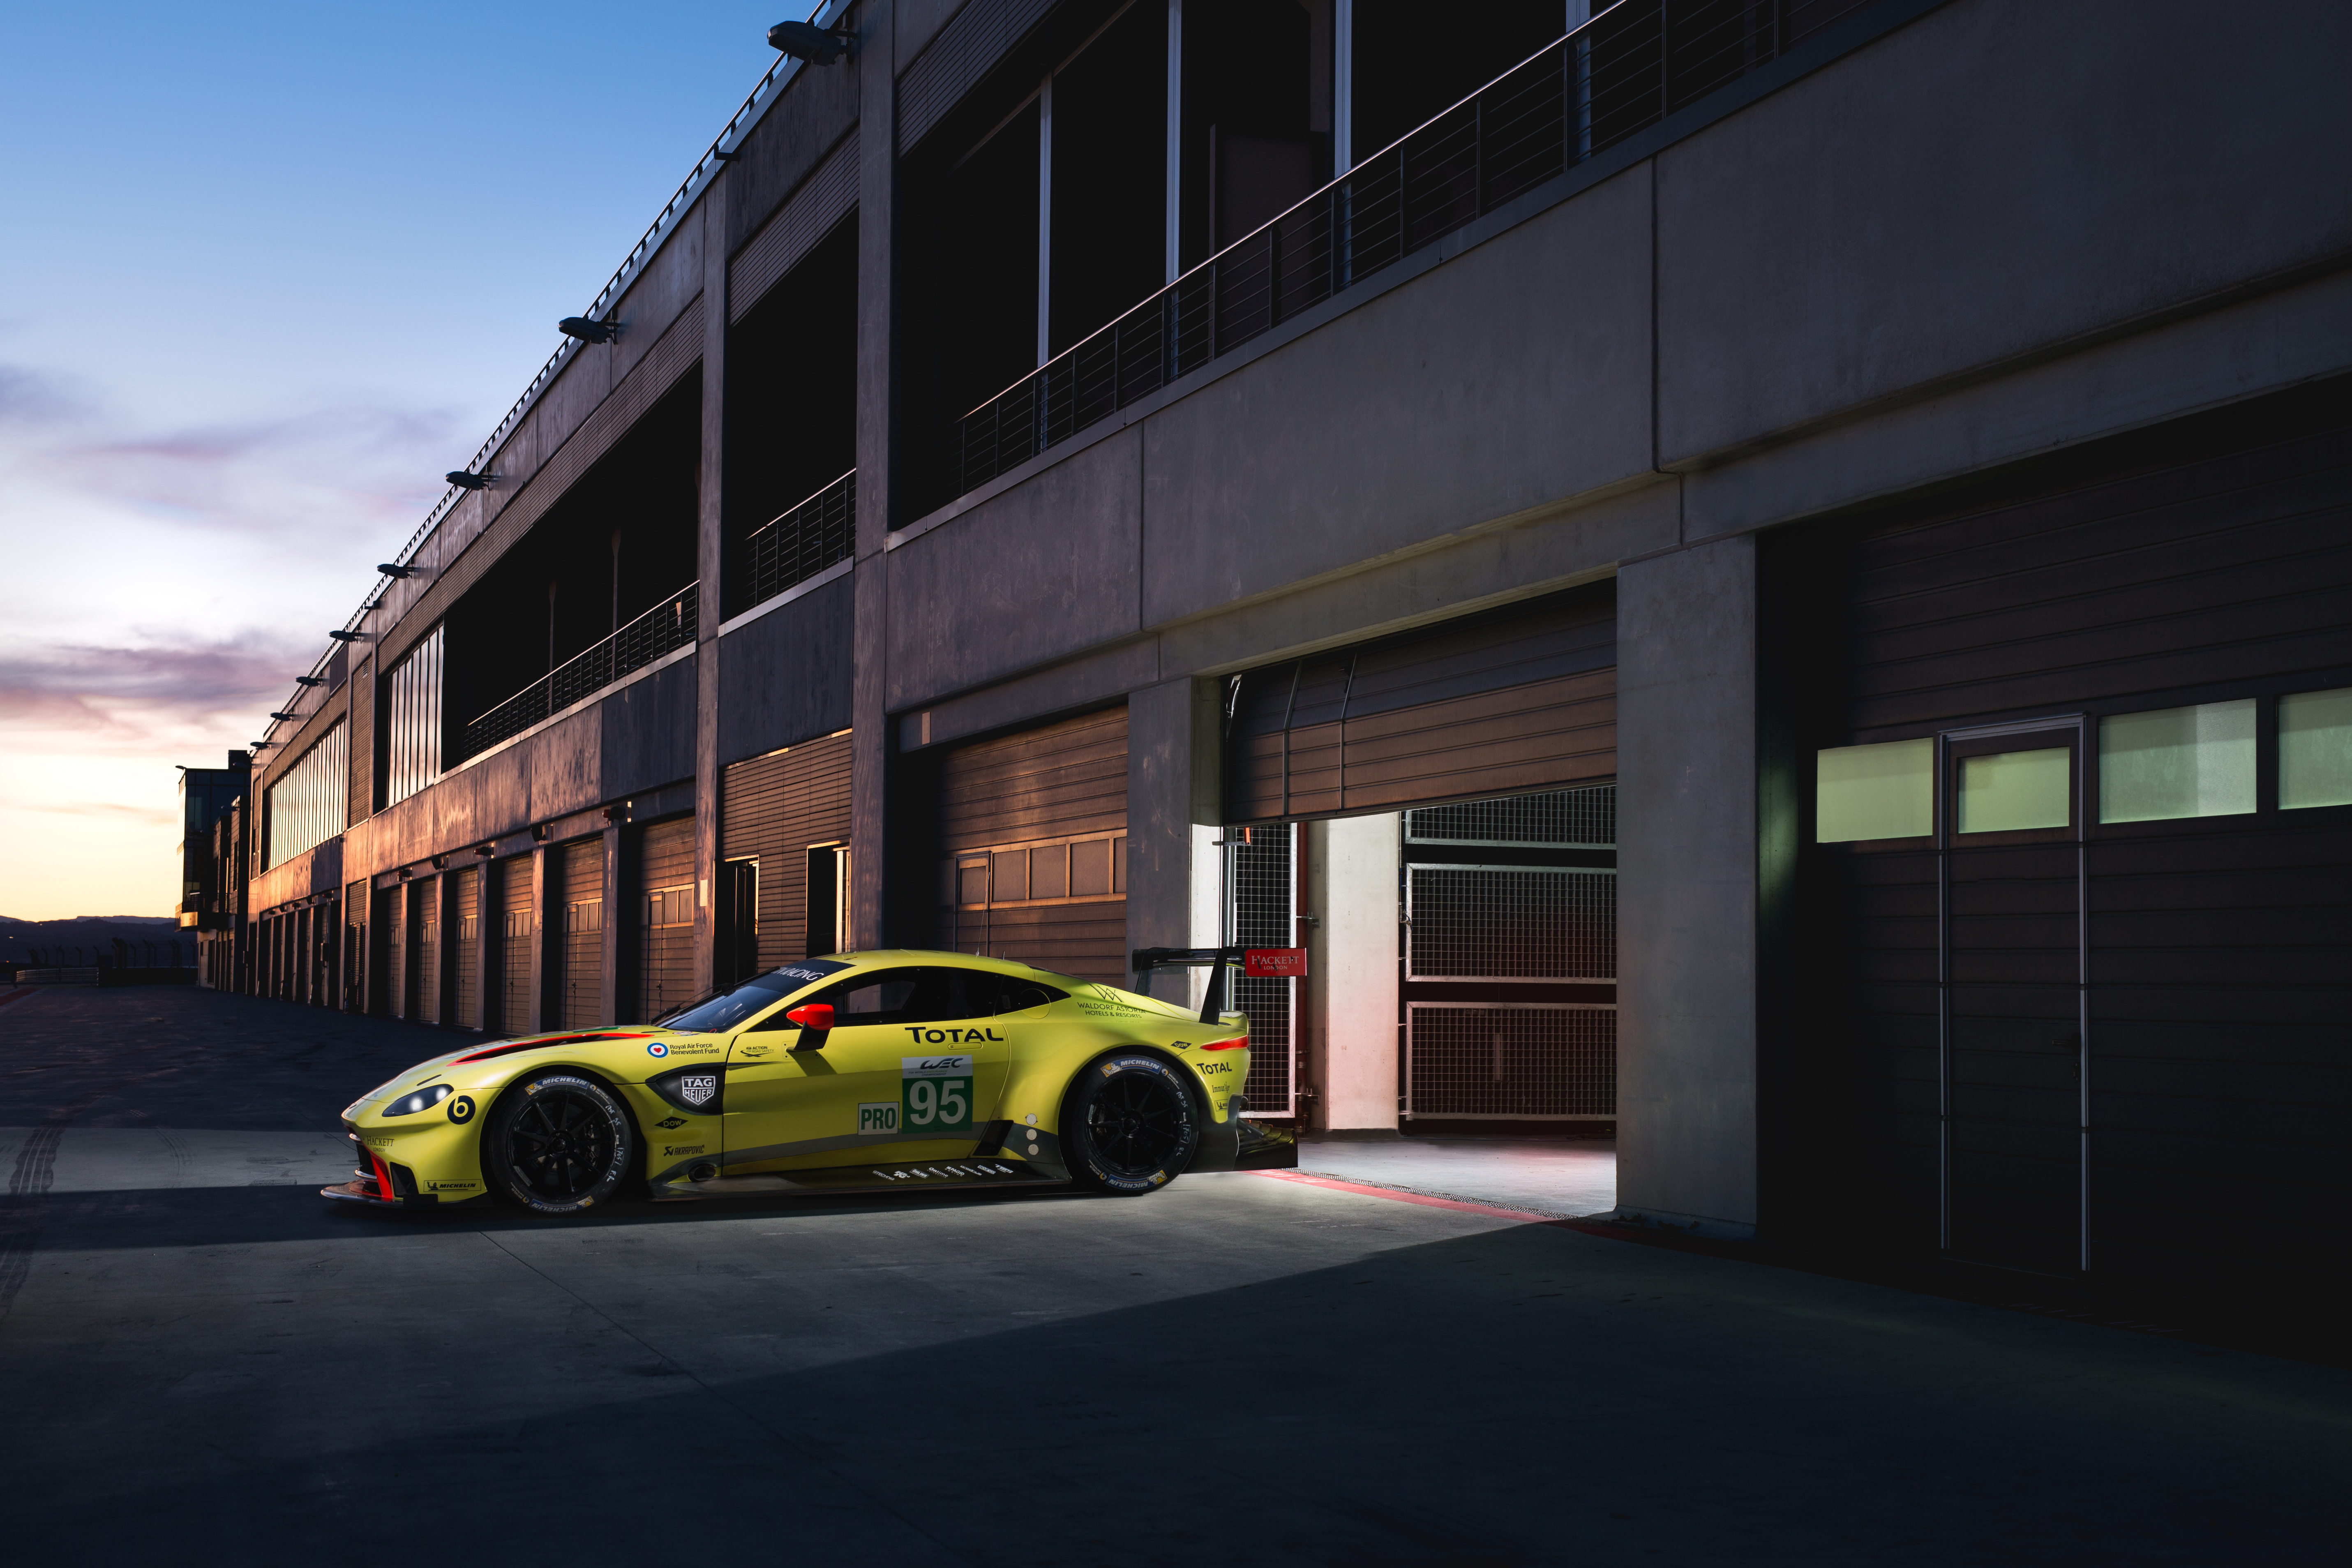 Aston Martin Vantage желтого цвета стоит у гаража